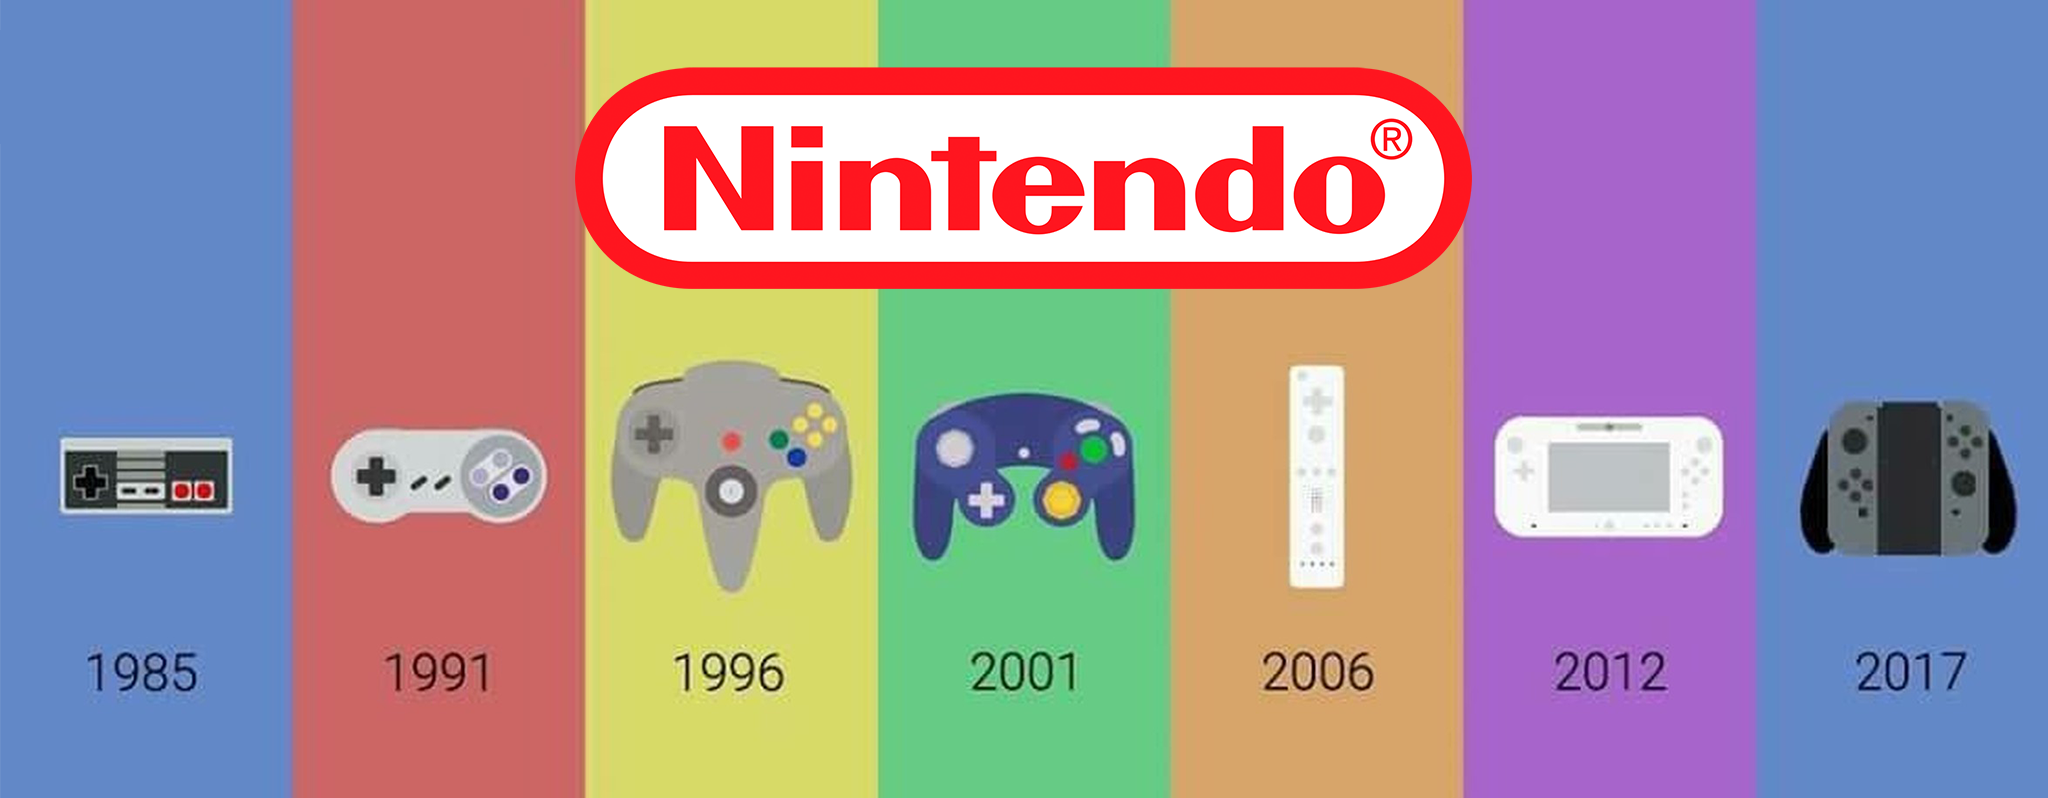 [Infographic] Những nốt thăng trầm của Nintendo qua các đời máy chơi game